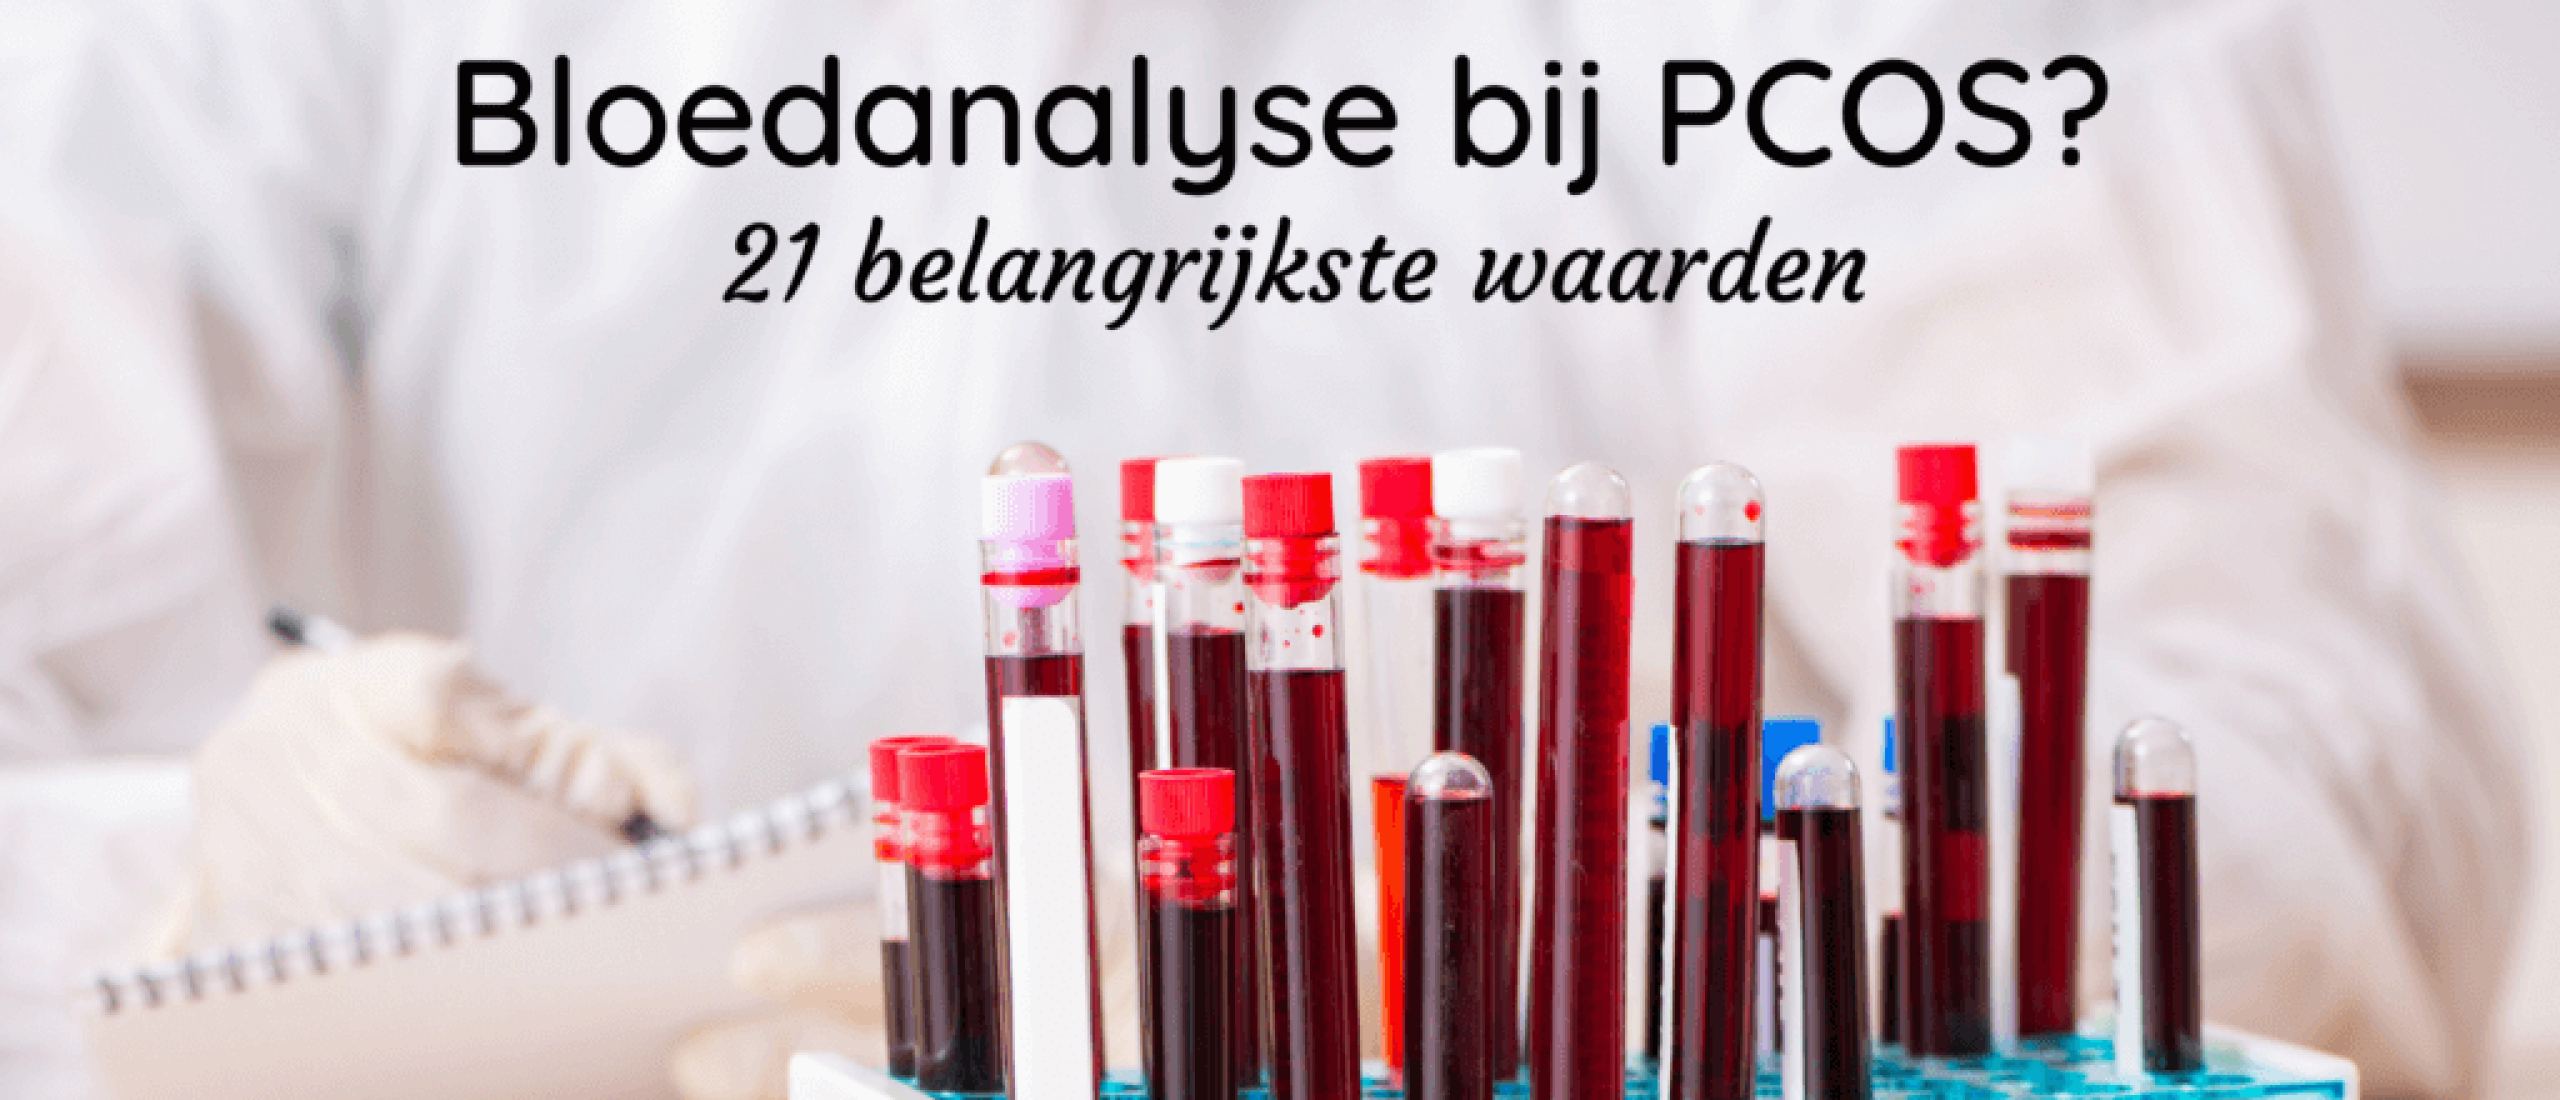 De 21 belangrijkste waarden voor een bloedanalyse bij PCOS.